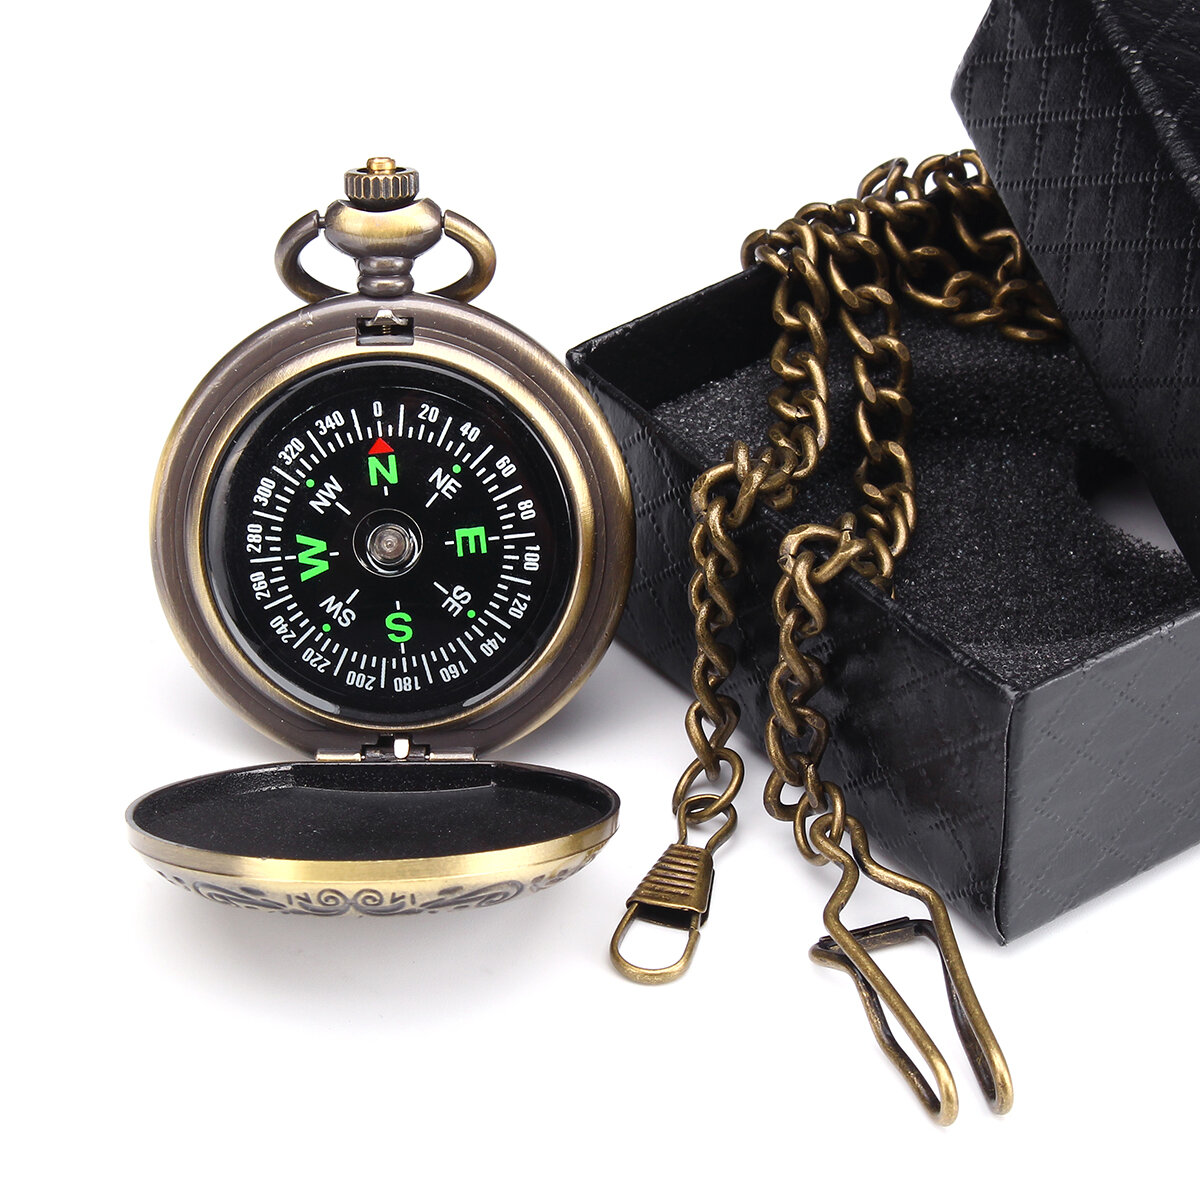 CHARMINER Cep Kompası Zincirli Taşınabilir Pirinç Kompas Klasik Atlama Kapağı Su Geçirmez Saat Flip-Open Navigasyon Araçları.